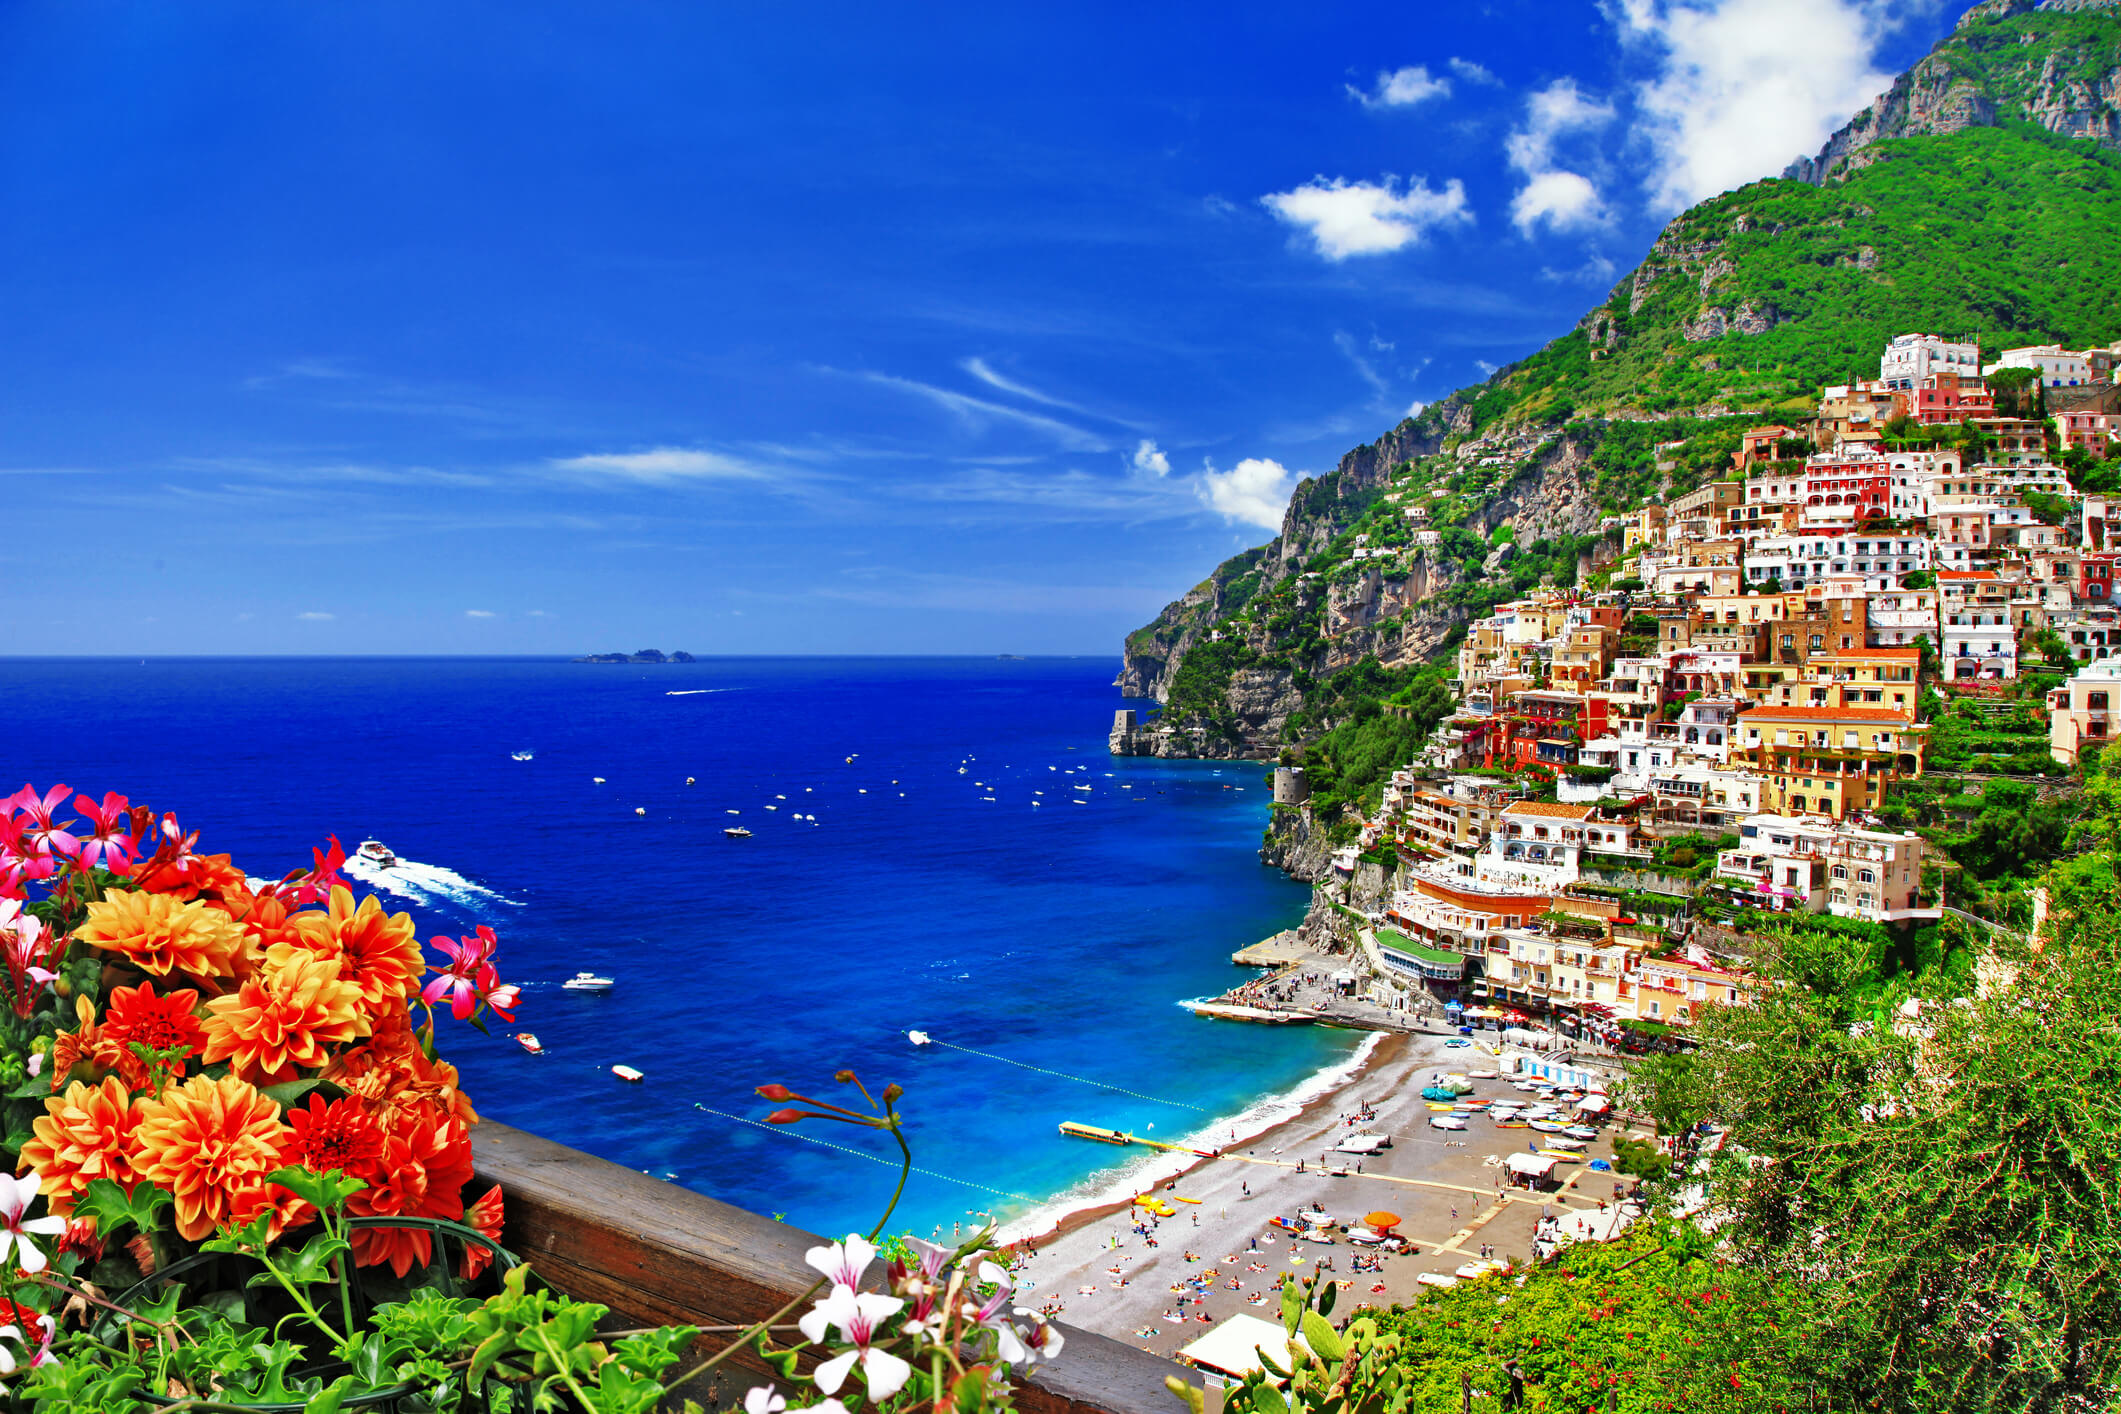 Vacations At Amalfi Coast Italy